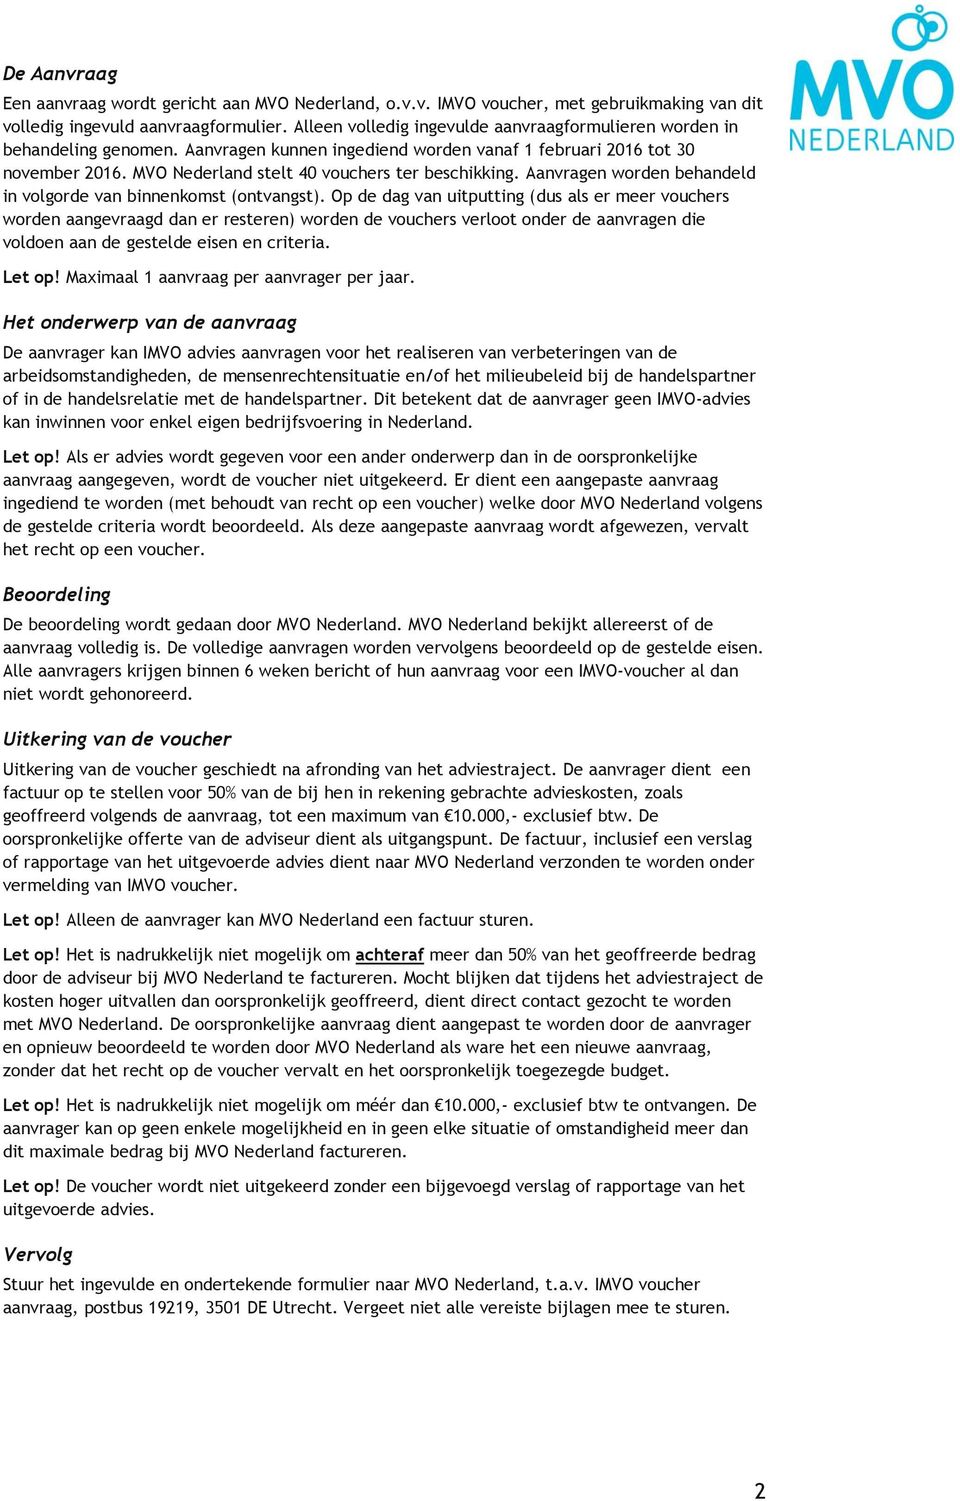 MVO Nederland stelt 40 vouchers ter beschikking. Aanvragen worden behandeld in volgorde van binnenkomst (ontvangst).